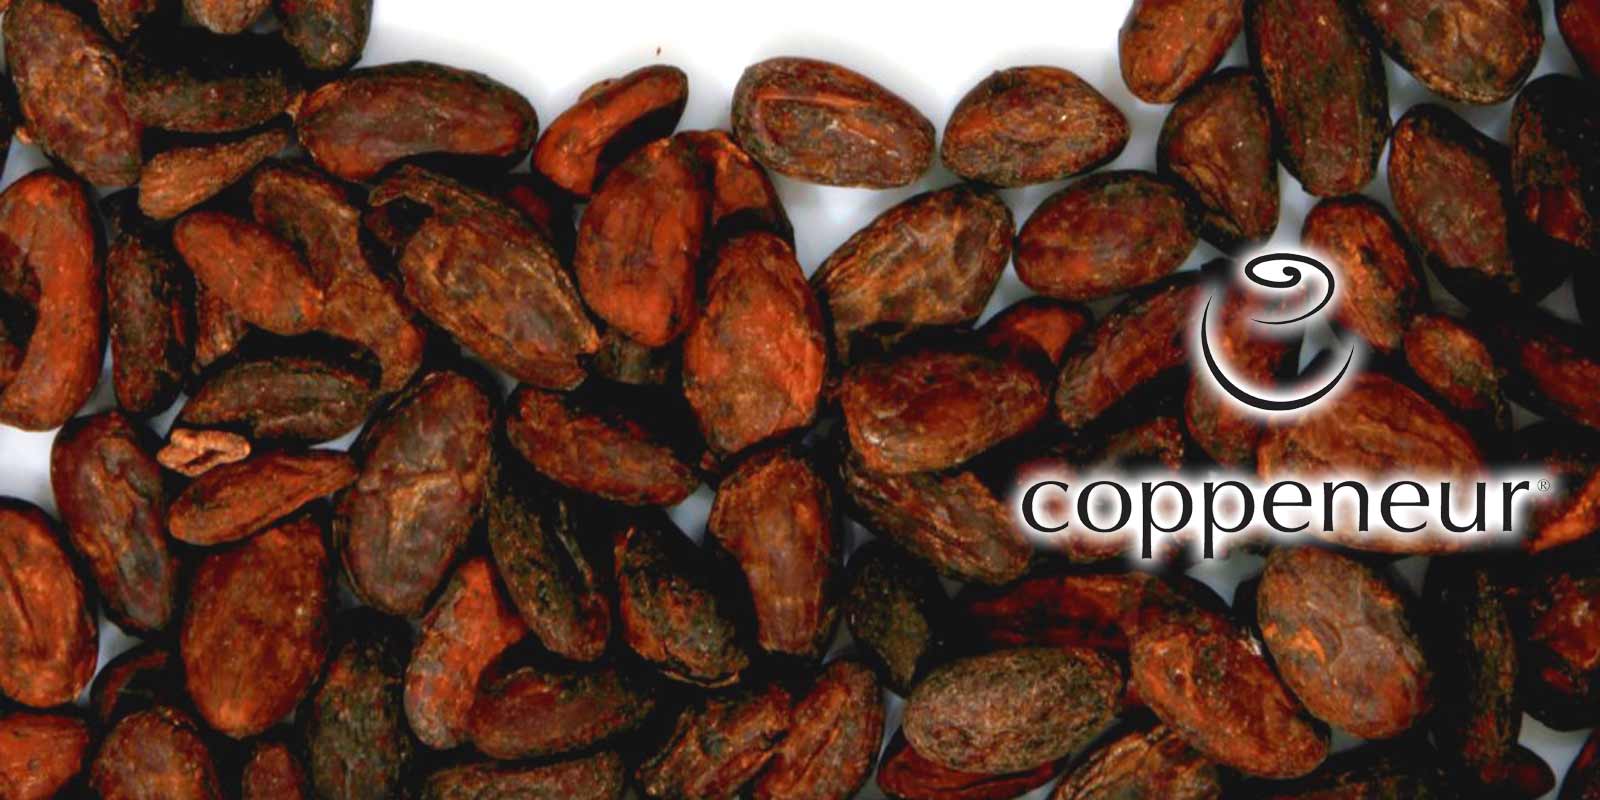 Schokoladen von Coppeneur Im rheinischen Bad-Honnef, liegt die exclusive Manufaktur der Confiserie Coppeneur et Compagnon. Hier entstehen seit Jahren die wohl raffiniertesten Kreationen aus Chocolade und Cacao.